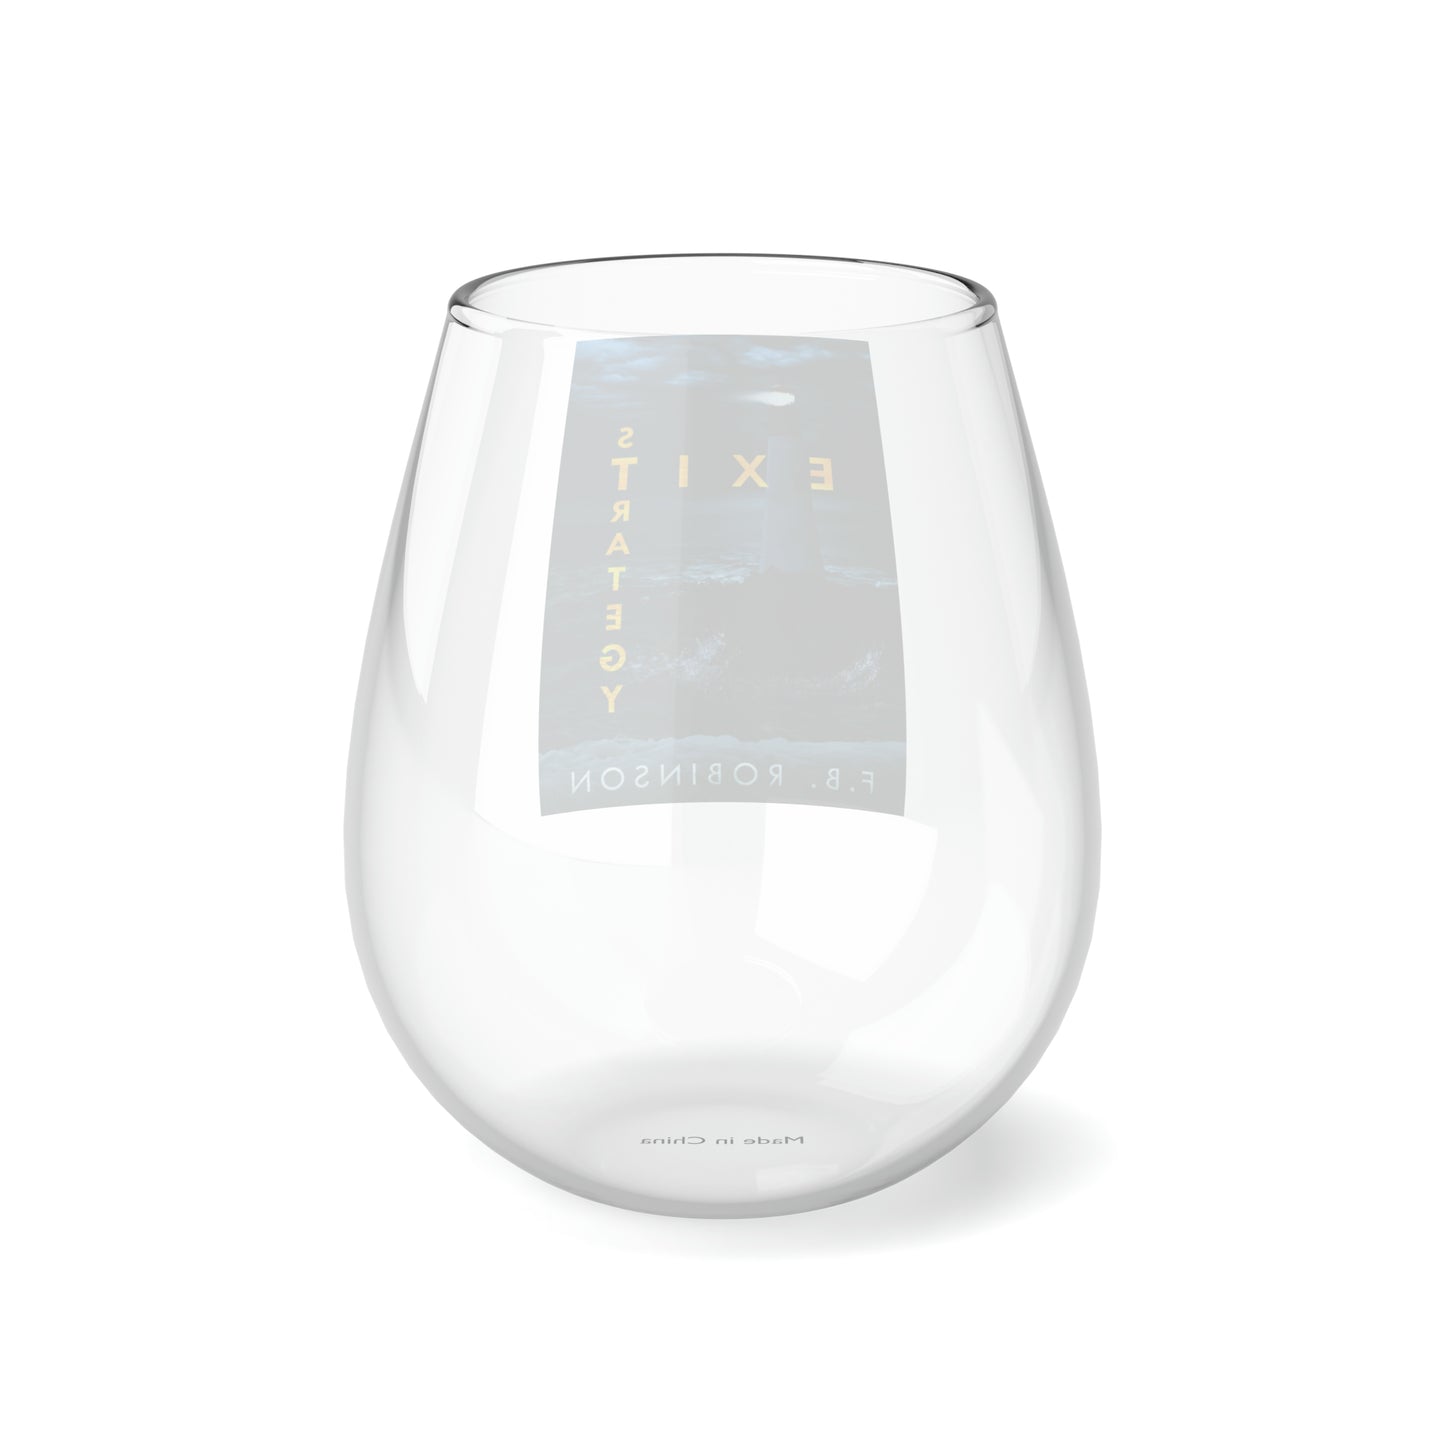 Exit Strategy - Stemless Wine Glass, 11.75oz